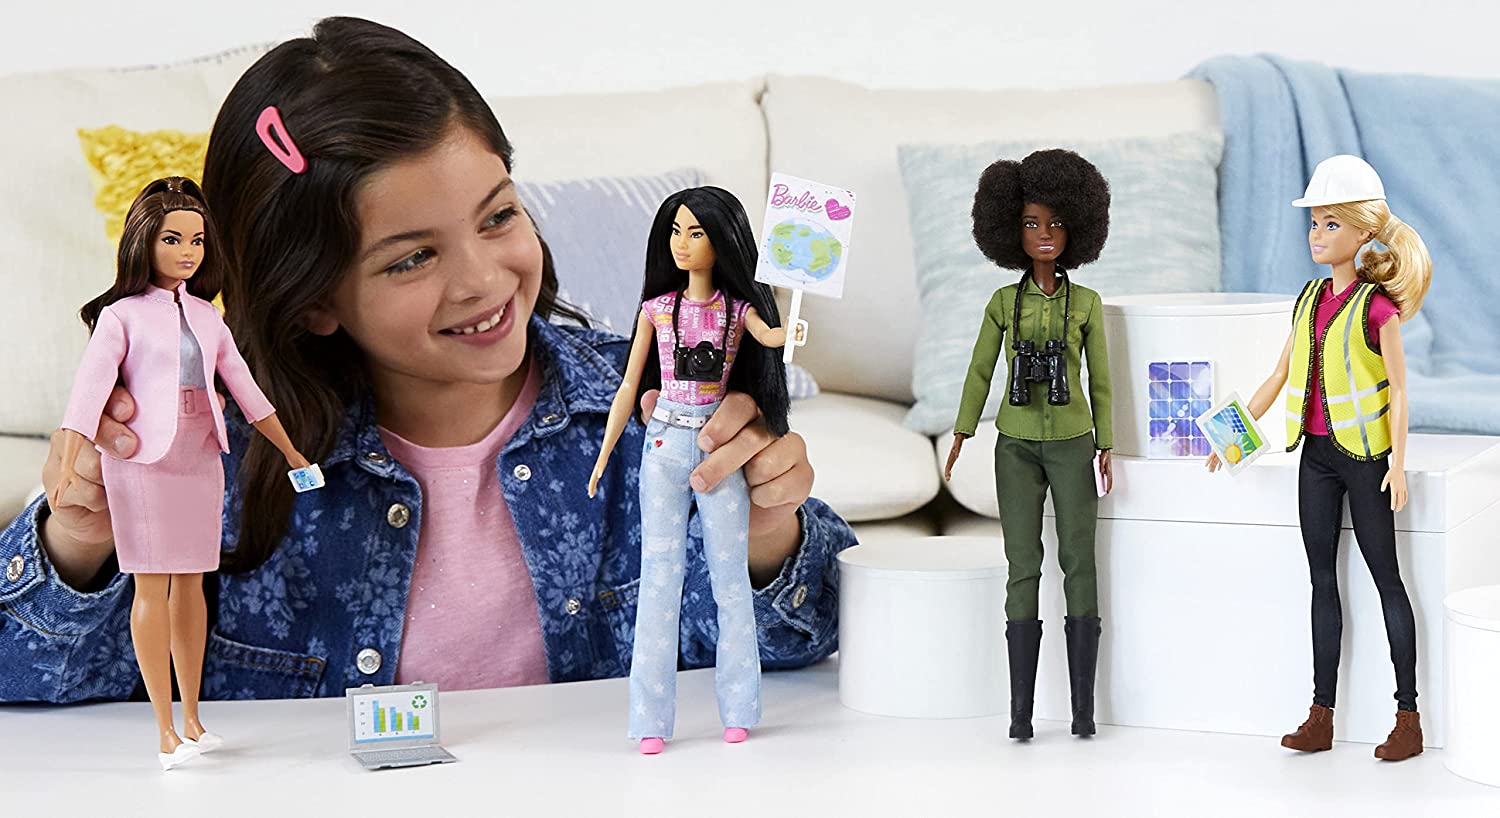 barbie eco leadership team 4 doll set